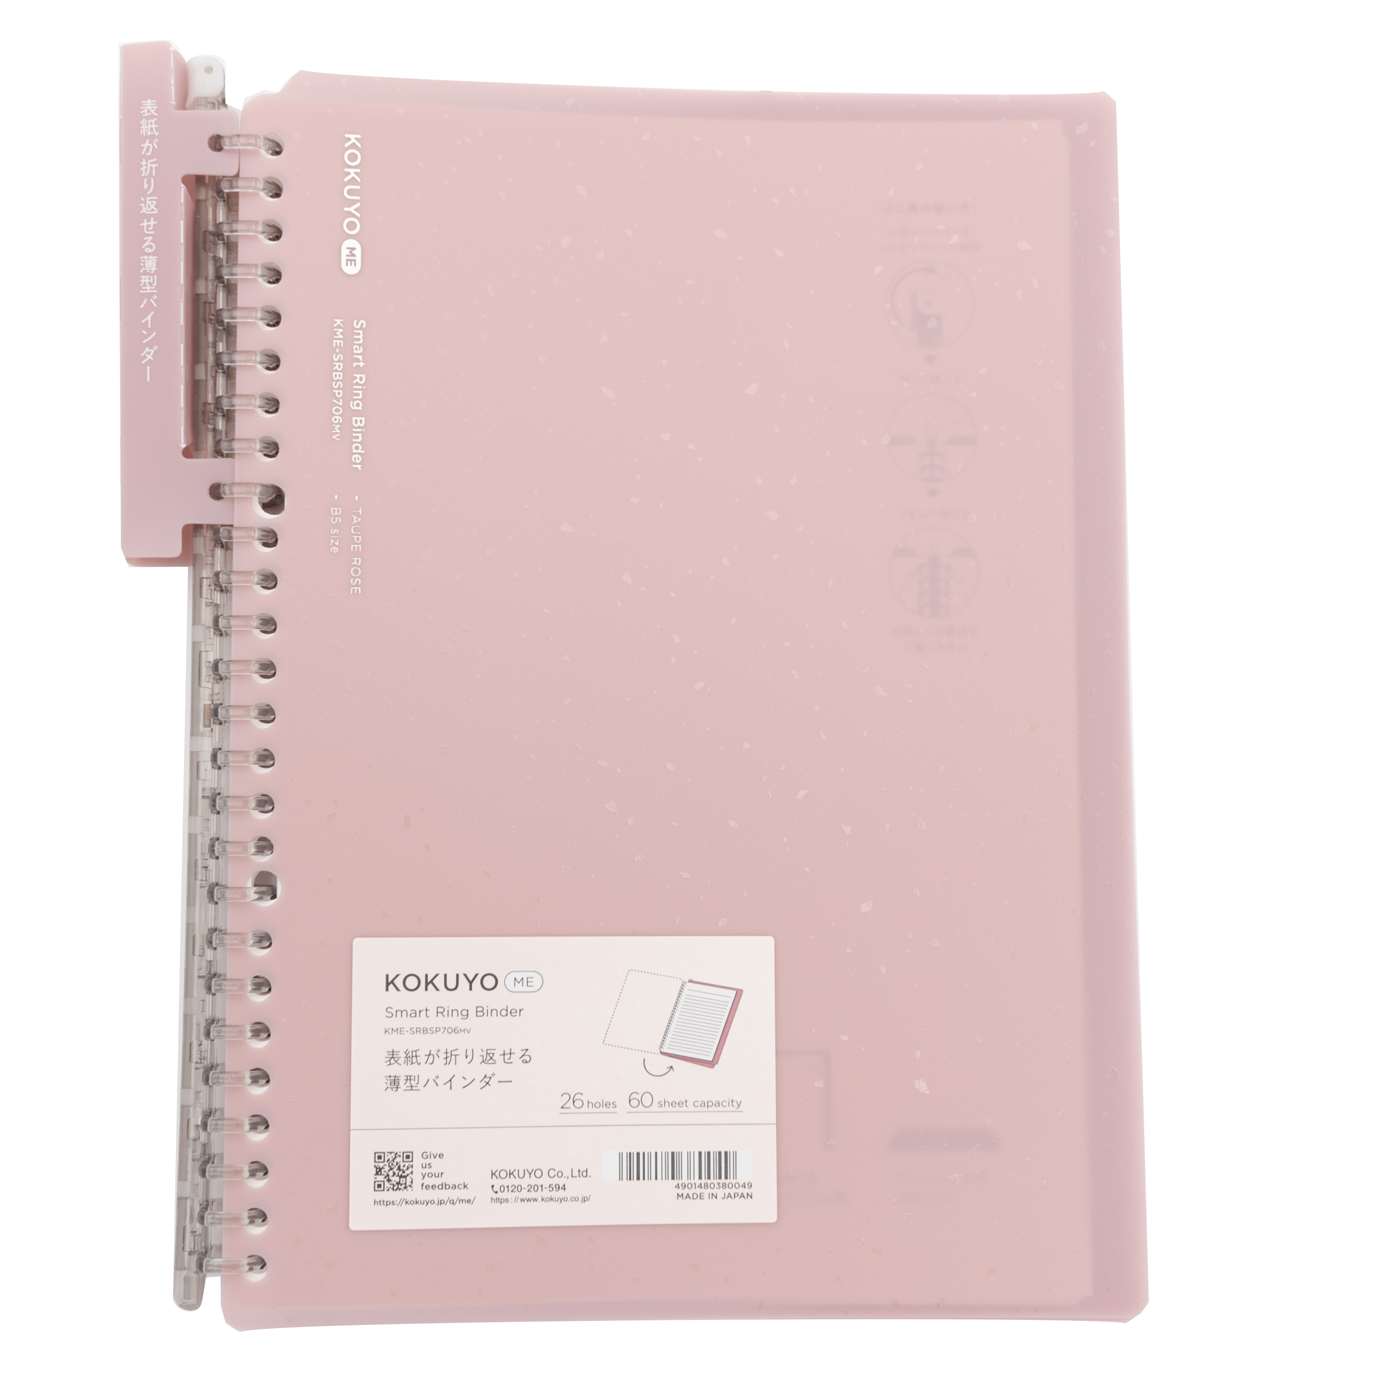 Kokuyo Campus Smart Ring Binder Notebook - B5 - 26 Rings - Light Pink